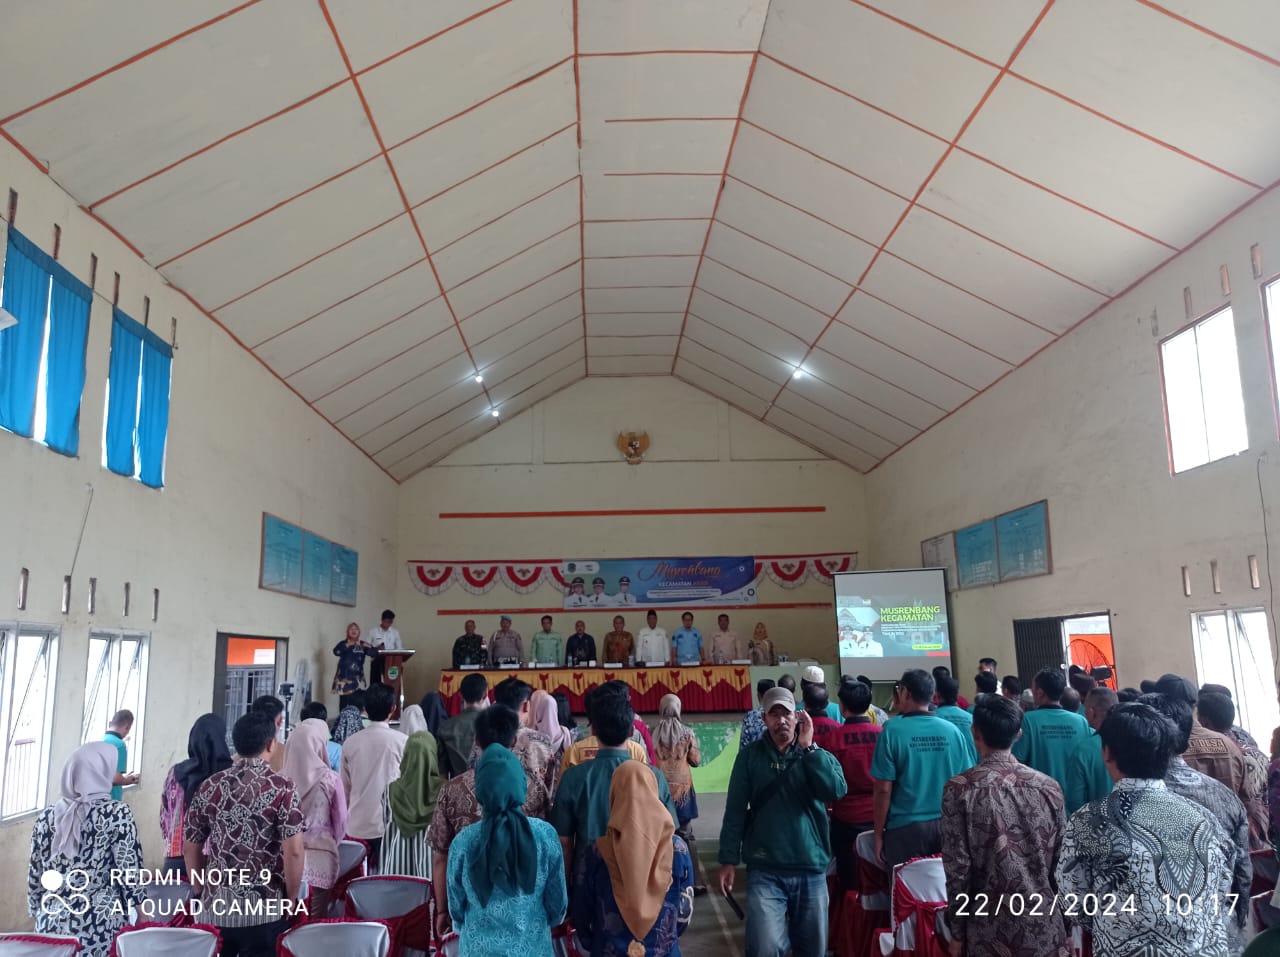 Polsek Penukal Abab Menghadiri Acara Musrenbang di Desa Betung Selatan